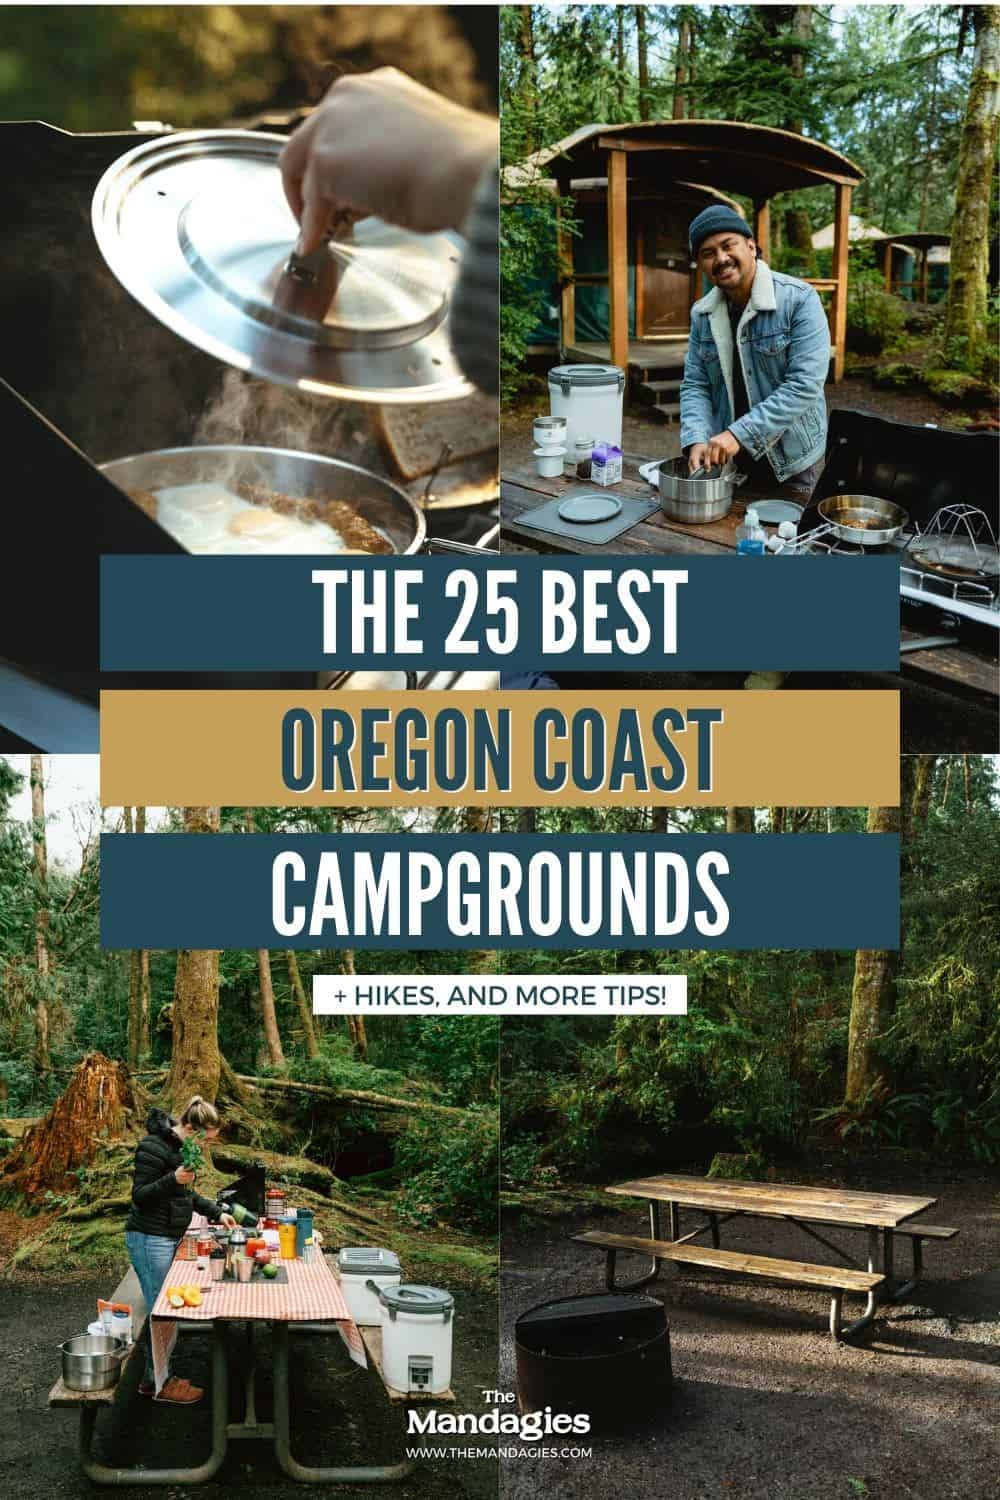 Oregon Coast Campgrounds Pin 2 - TheMandagies.com